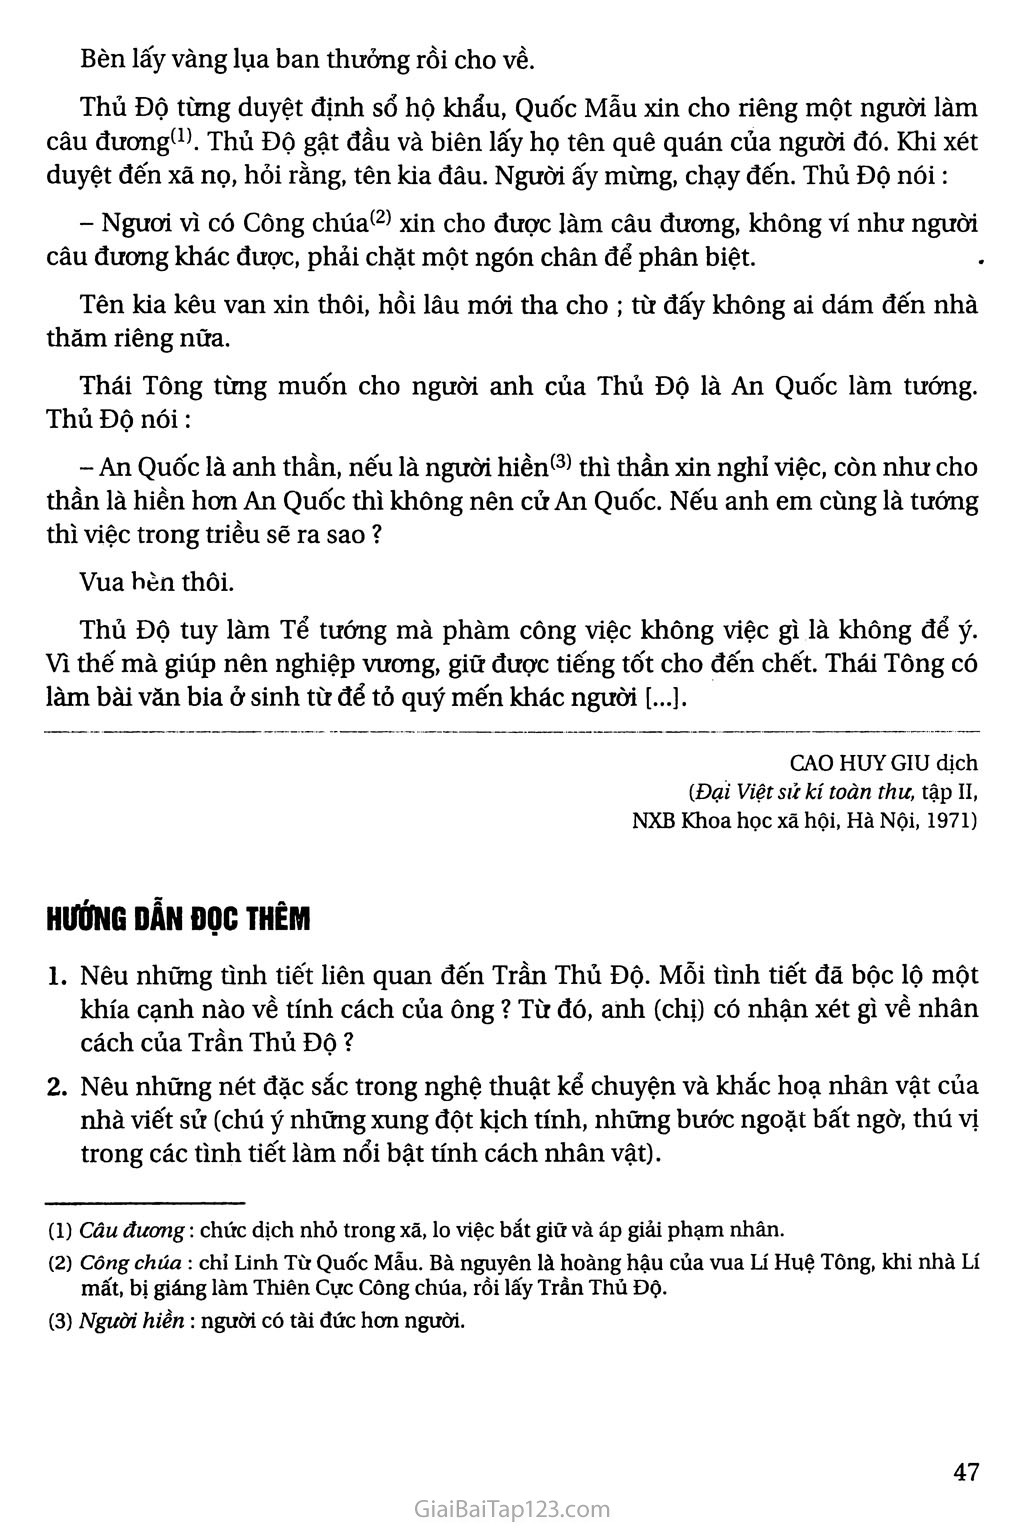 Đọc thêm: Thái sư Trần Thủ Độ (trích Đại Việt sử kí toàn thư) trang 2